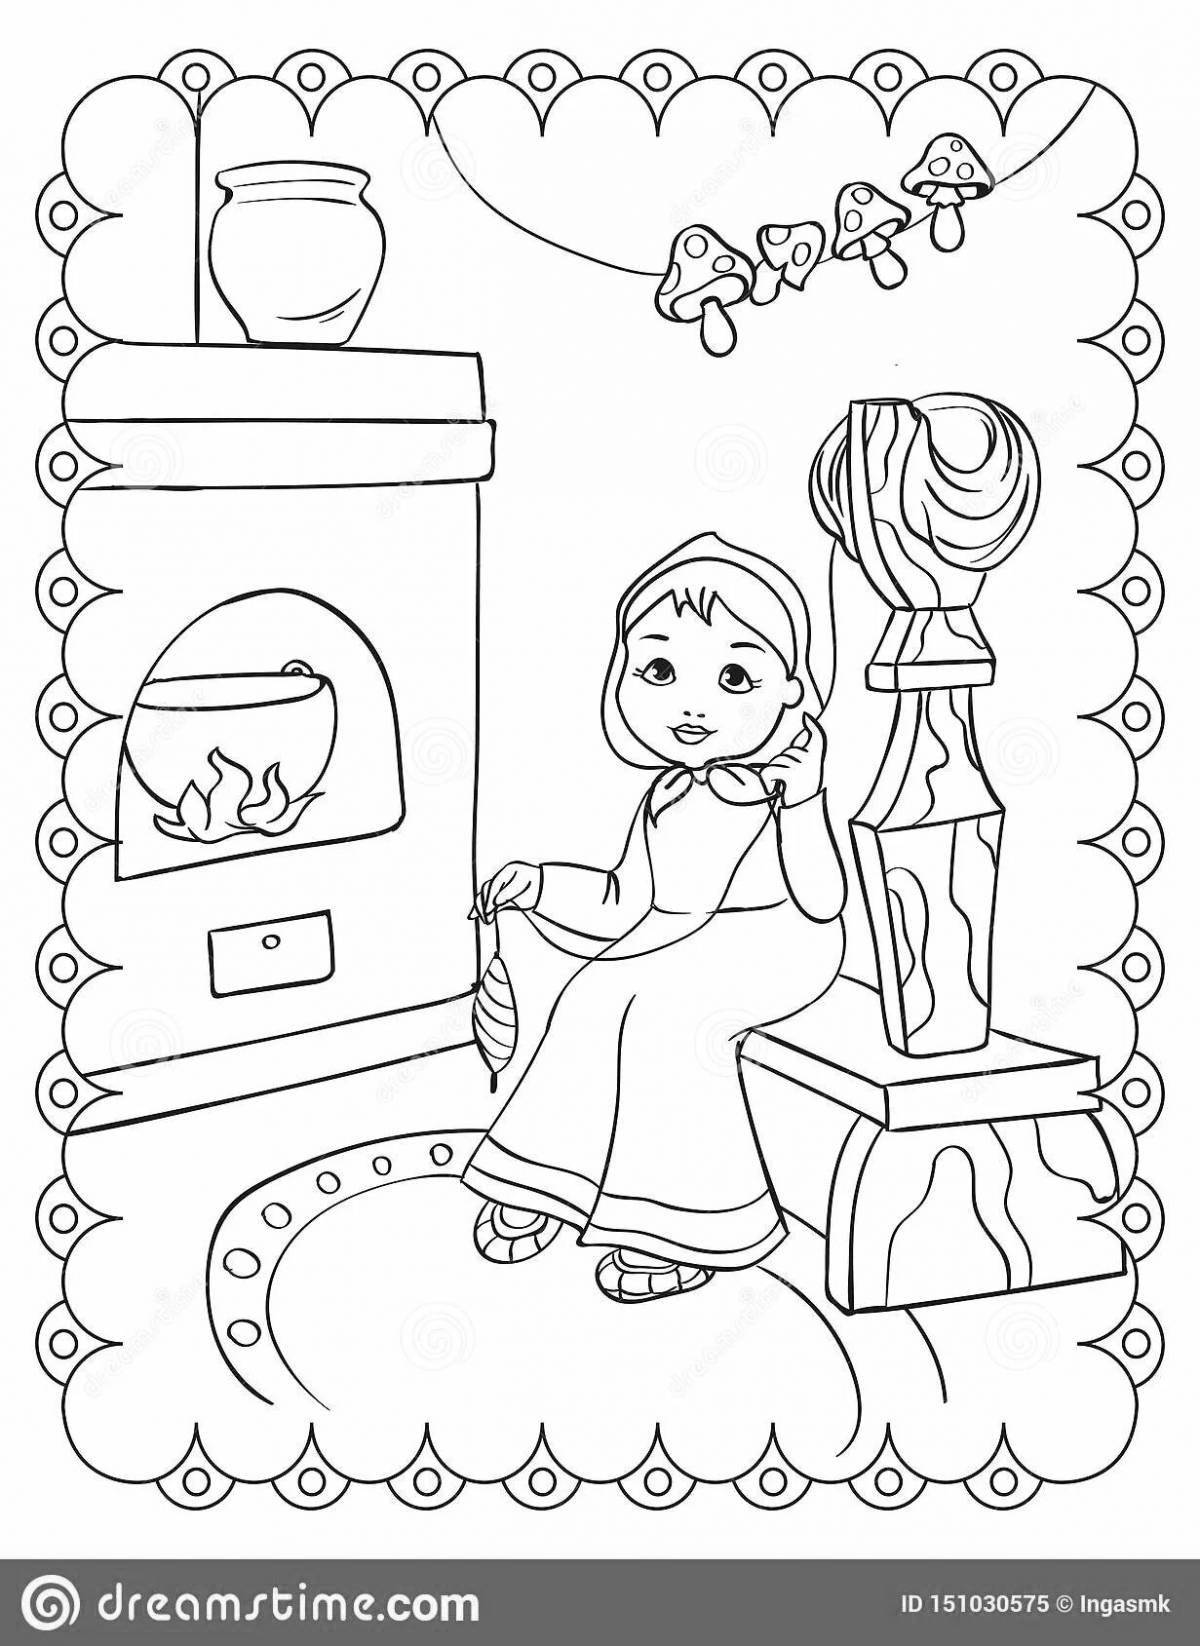 Children's oven #1